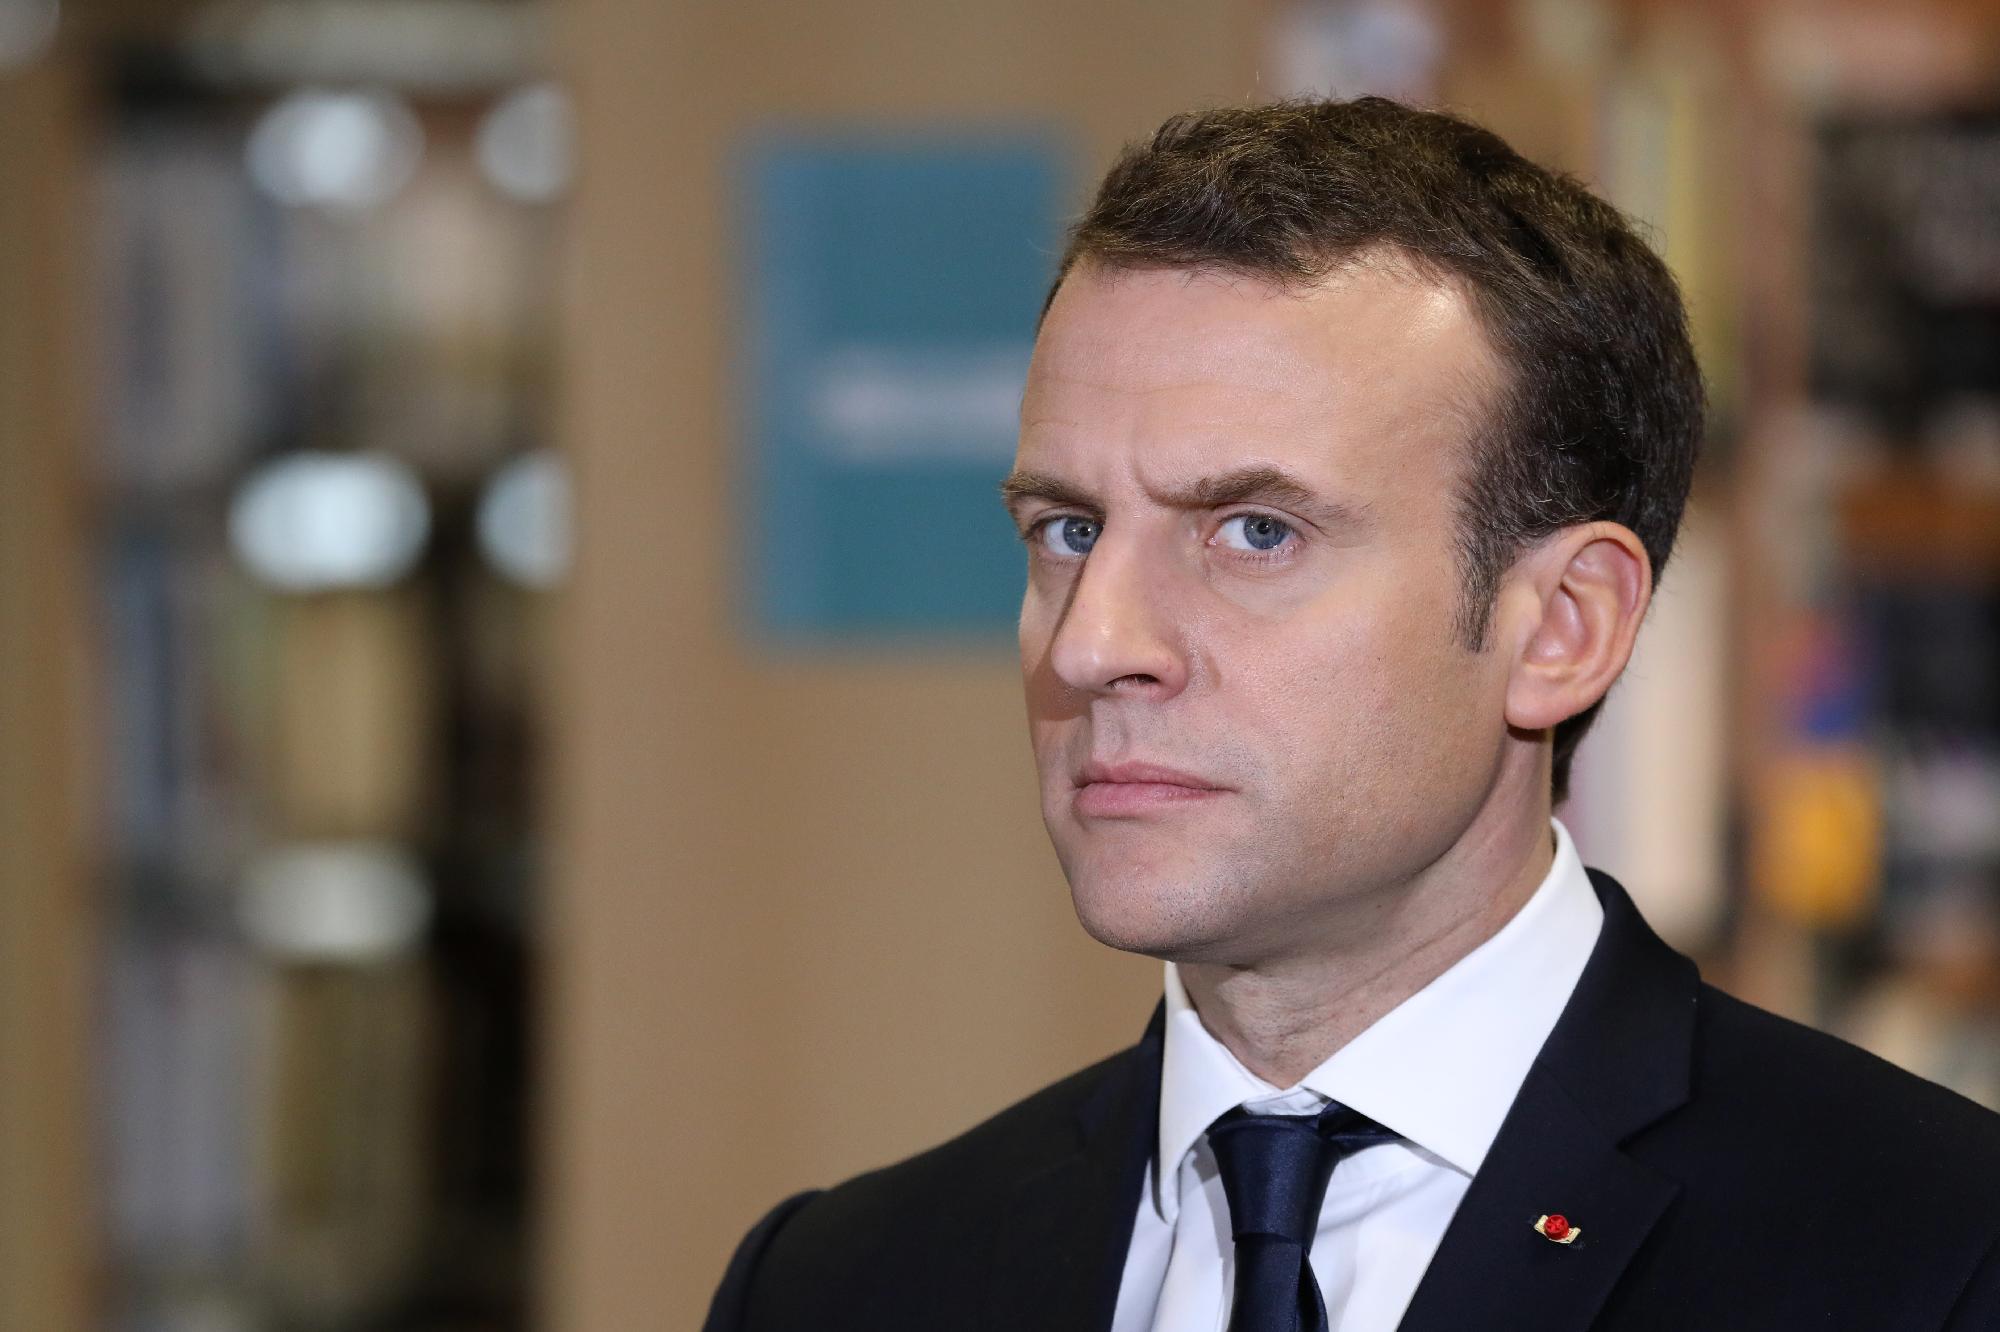 Macron a politikai projektként felfogott Európa építését szorgalmazta